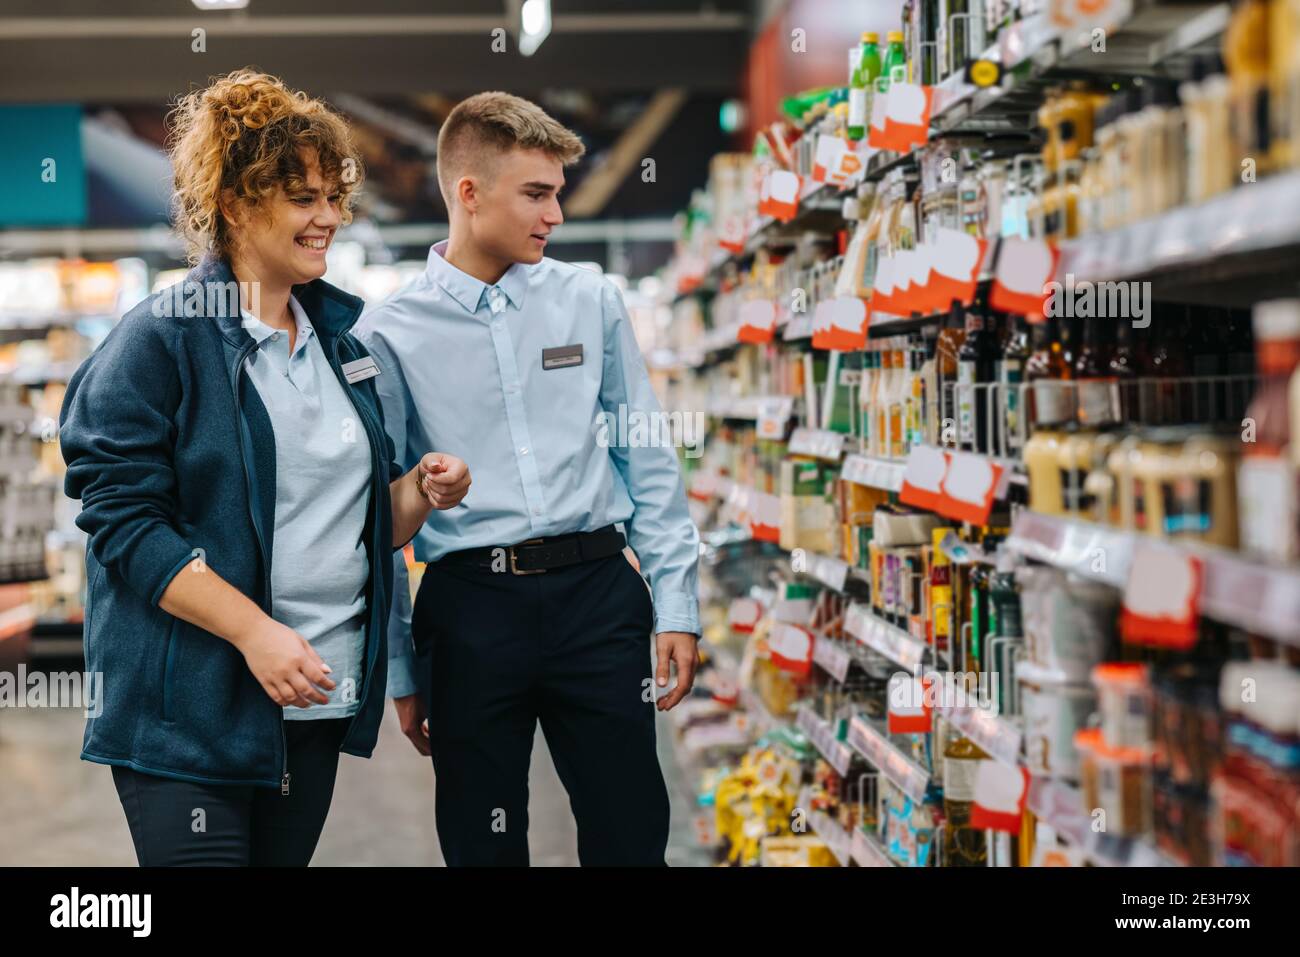 Weibliche Führungskraft hilft neuen männlichen Auszubildenden im Lebensmittelgeschäft. Mann im Urlaub Job bekommen Hilfe vom Manager im Supermarkt. Stockfoto